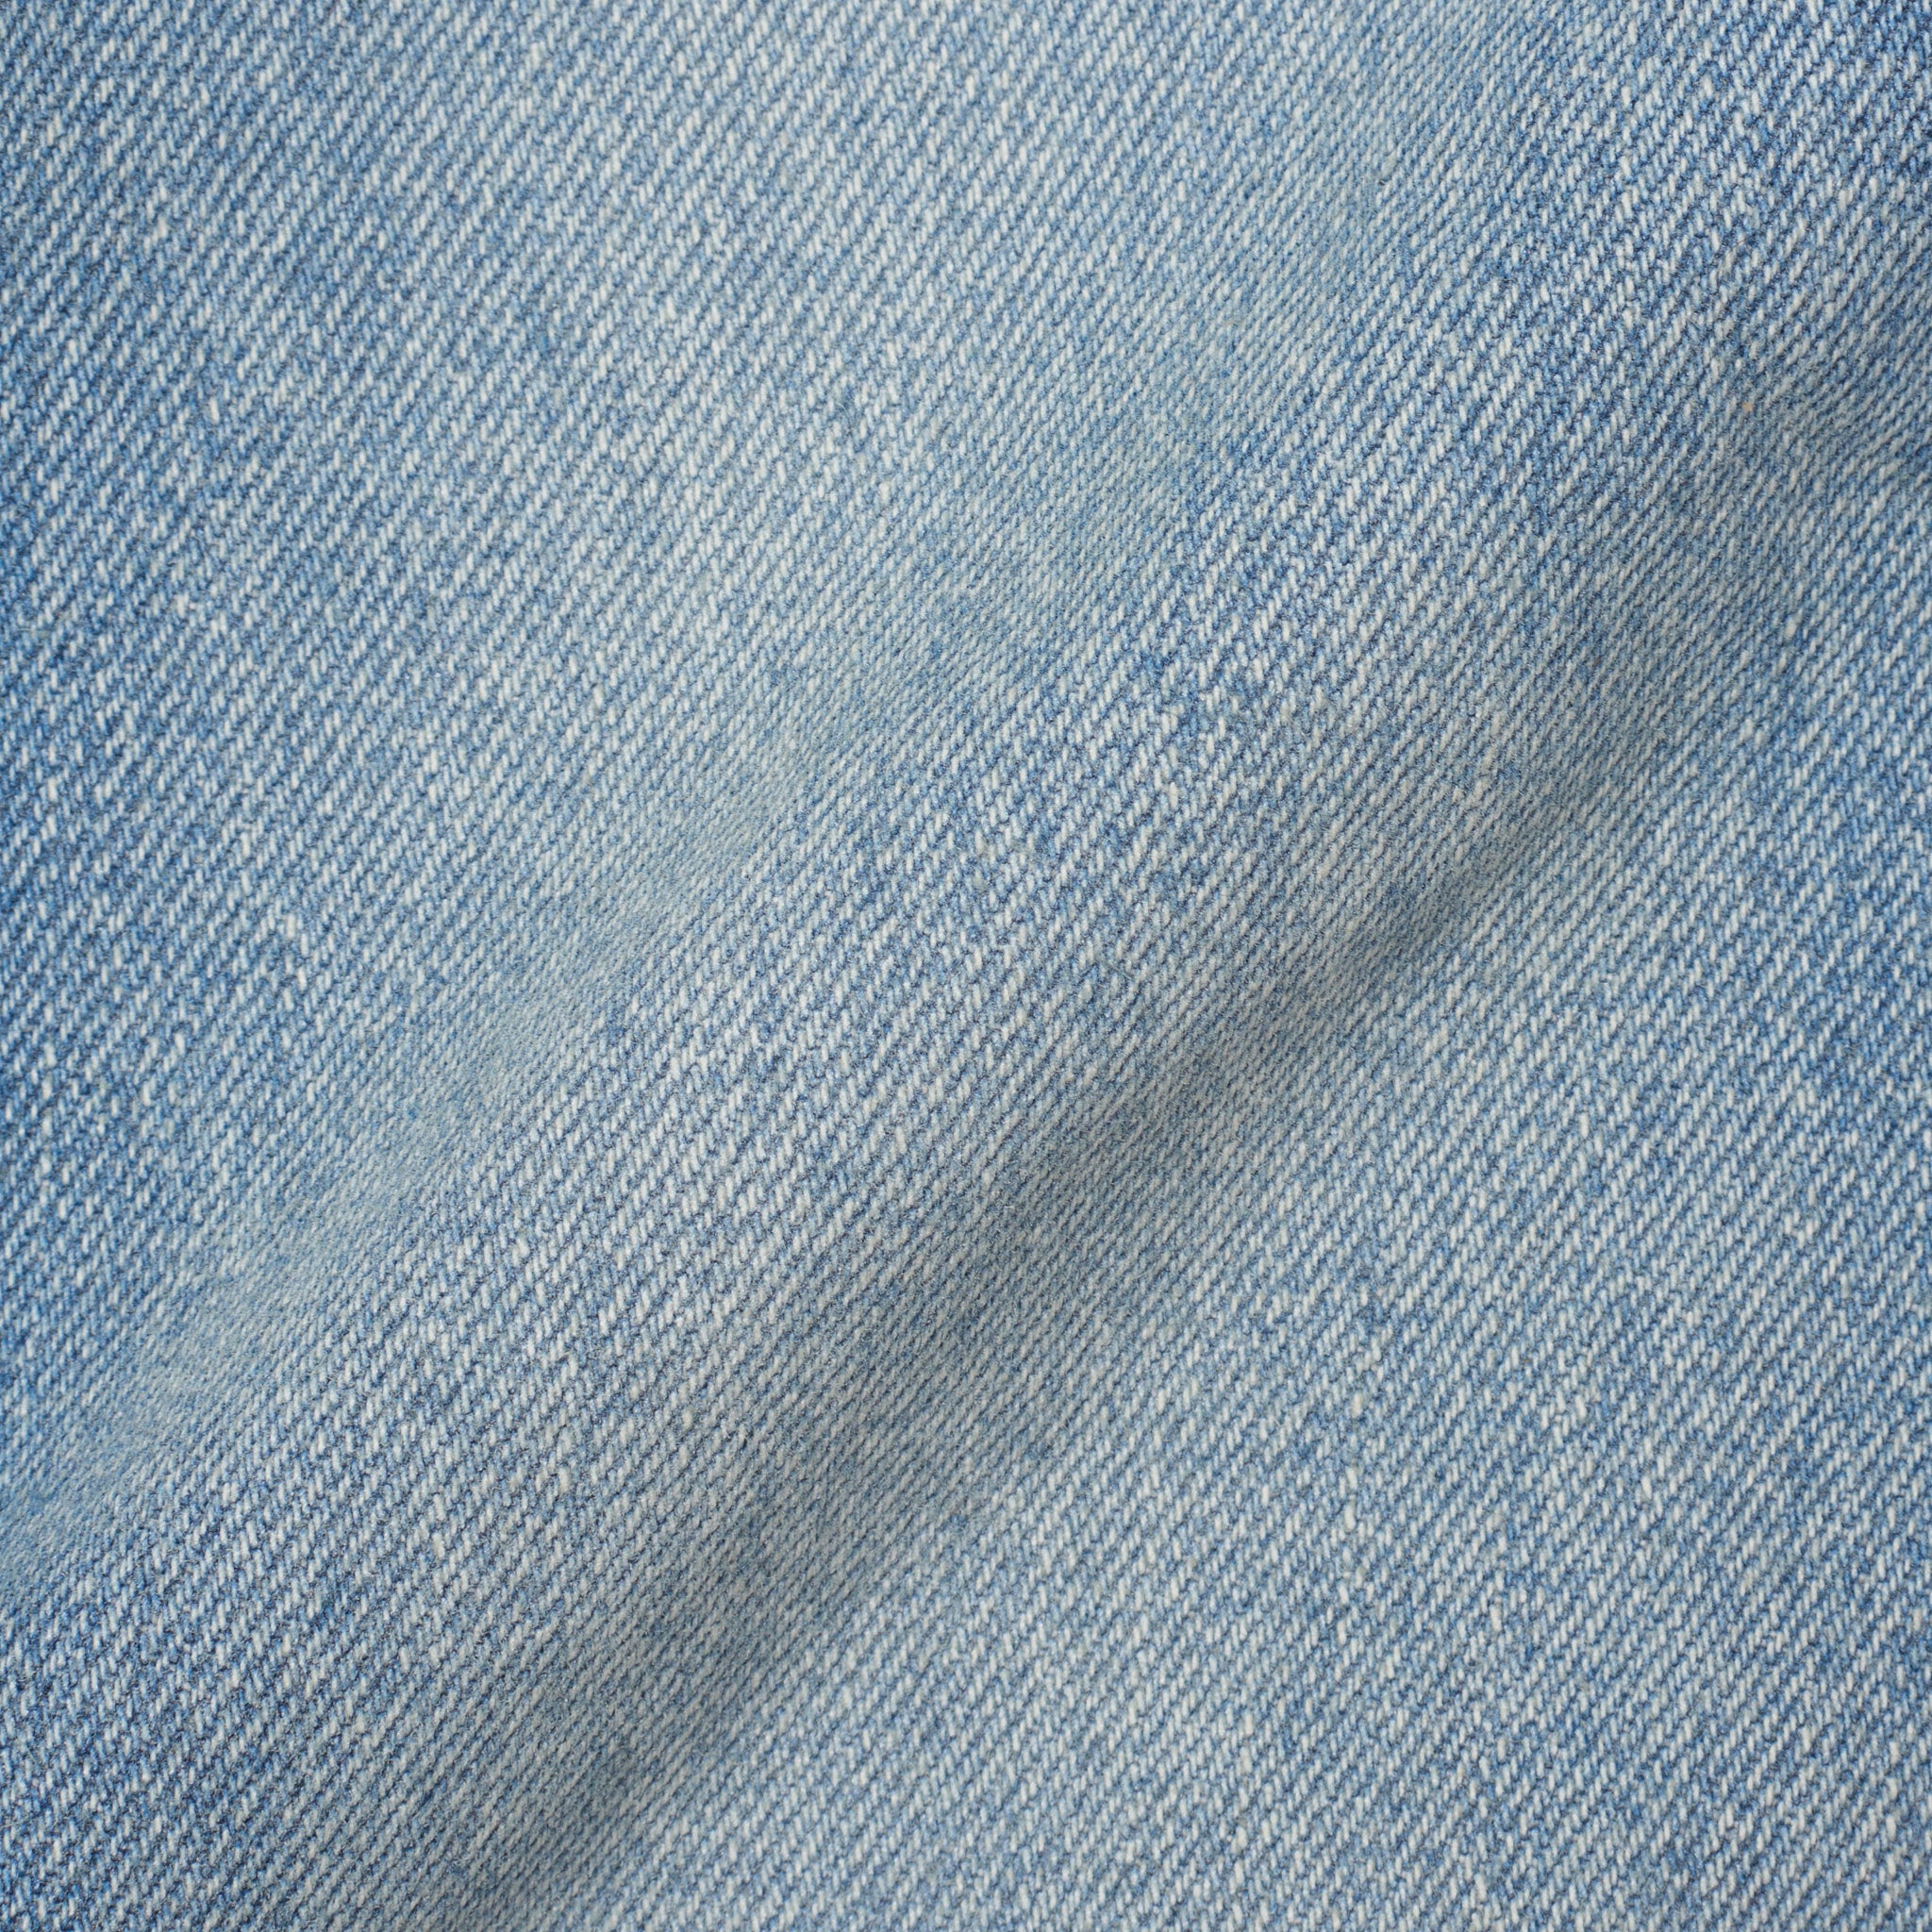 Vintage LEVI'S 501XX Blue Denim Slim Straight Fit Jeans Pants W34 L32 LEVI'S